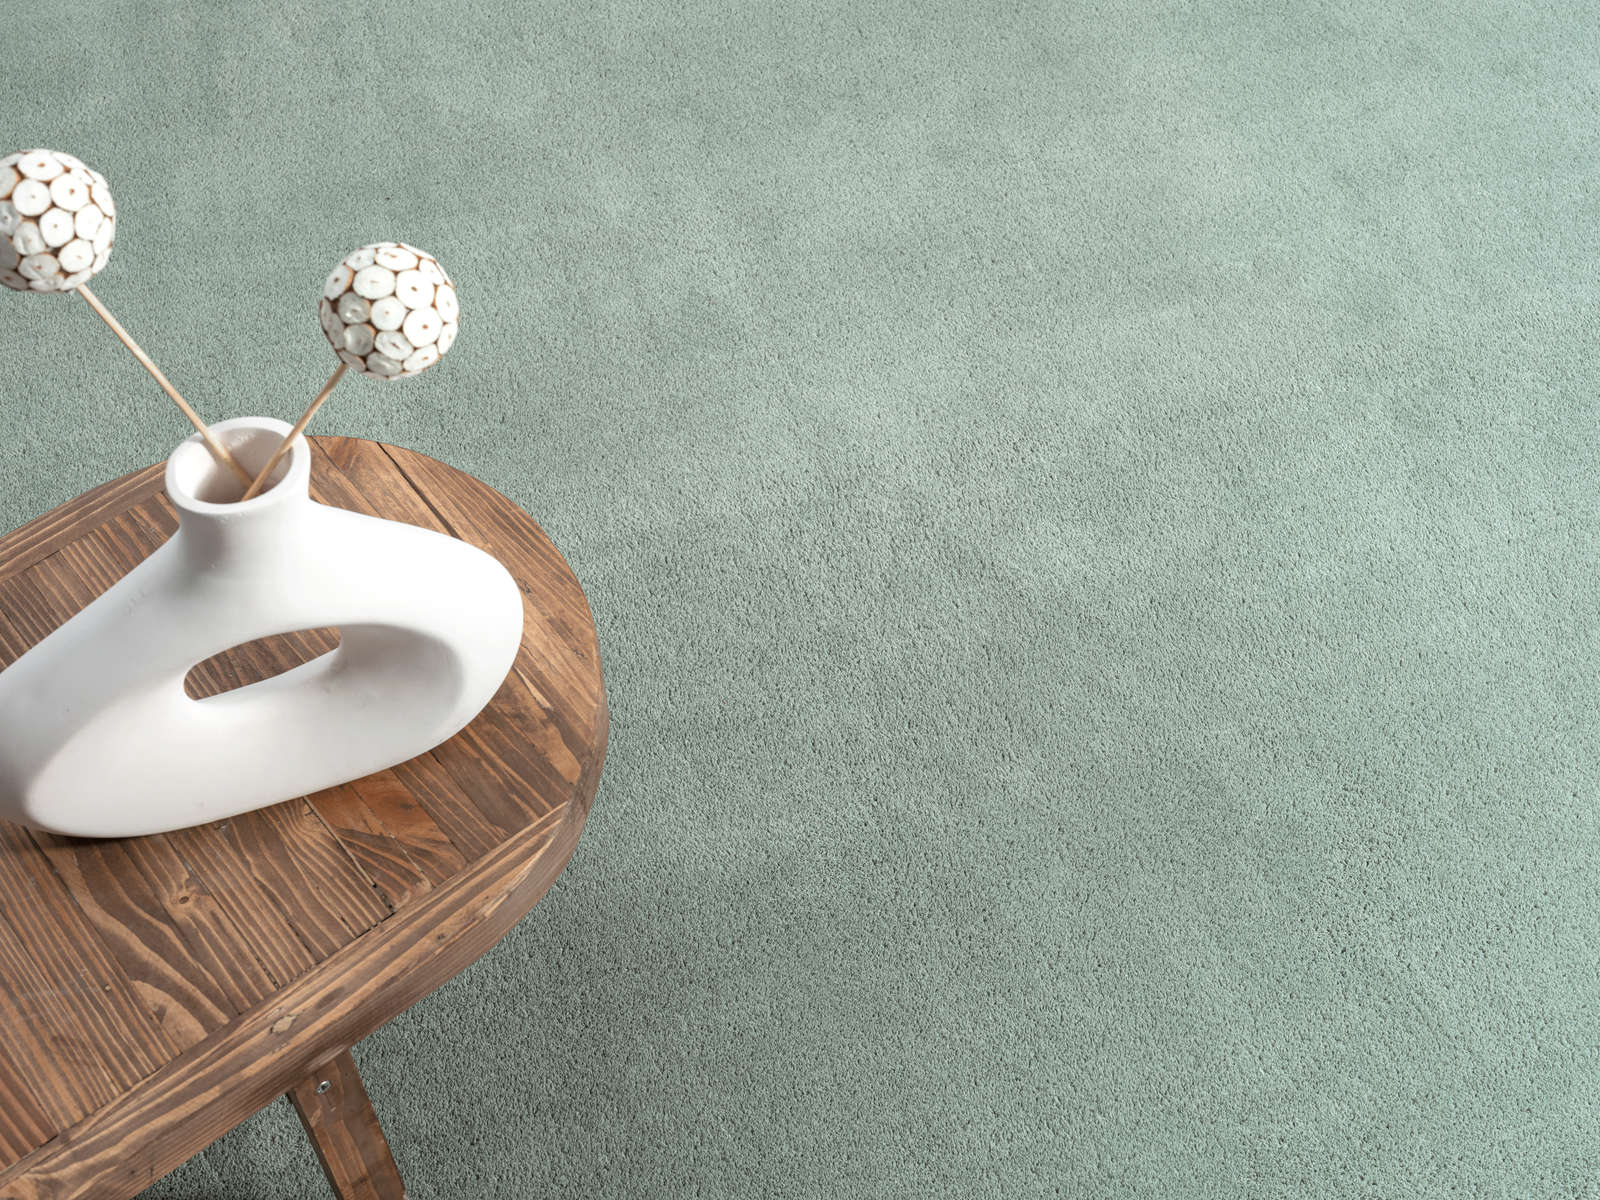             Zacht hoogpolig tapijt in groen - 290 x 200 cm
        